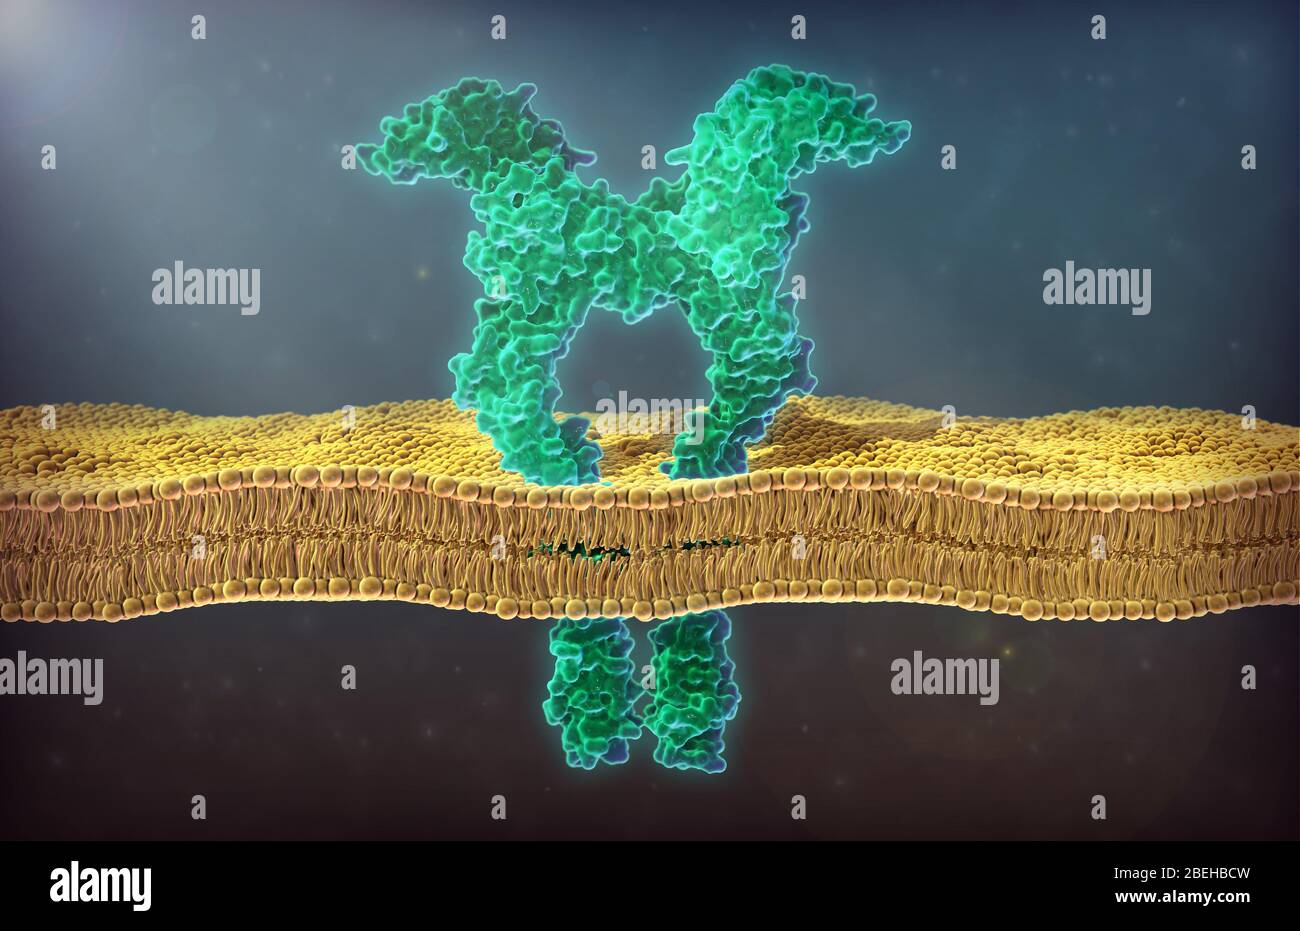 Un'illustrazione di un recettore del fattore di crescita endoteliale vascolare (VEGFR), sottotipo 2. Il fattore di crescita endoteliale vascolare è una proteina di segnalazione coinvolta nella formazione del sistema circolatorio e nella crescita dei vasi sanguigni. Le proteine VEGF stimolano le risposte cellulari interagendo con recettori specifici della tirosina chinasi noti come VEGFR sulla superficie cellulare. Sia VEGF che VEGFR giocano un ruolo nell'angiogenesi patologica, in particolare nell'angiogenesi tumorale, per cui i vasi sanguigni di nuova formazione possono fornire nutrienti e trasportare cellule cancerose nell'organismo. Foto Stock